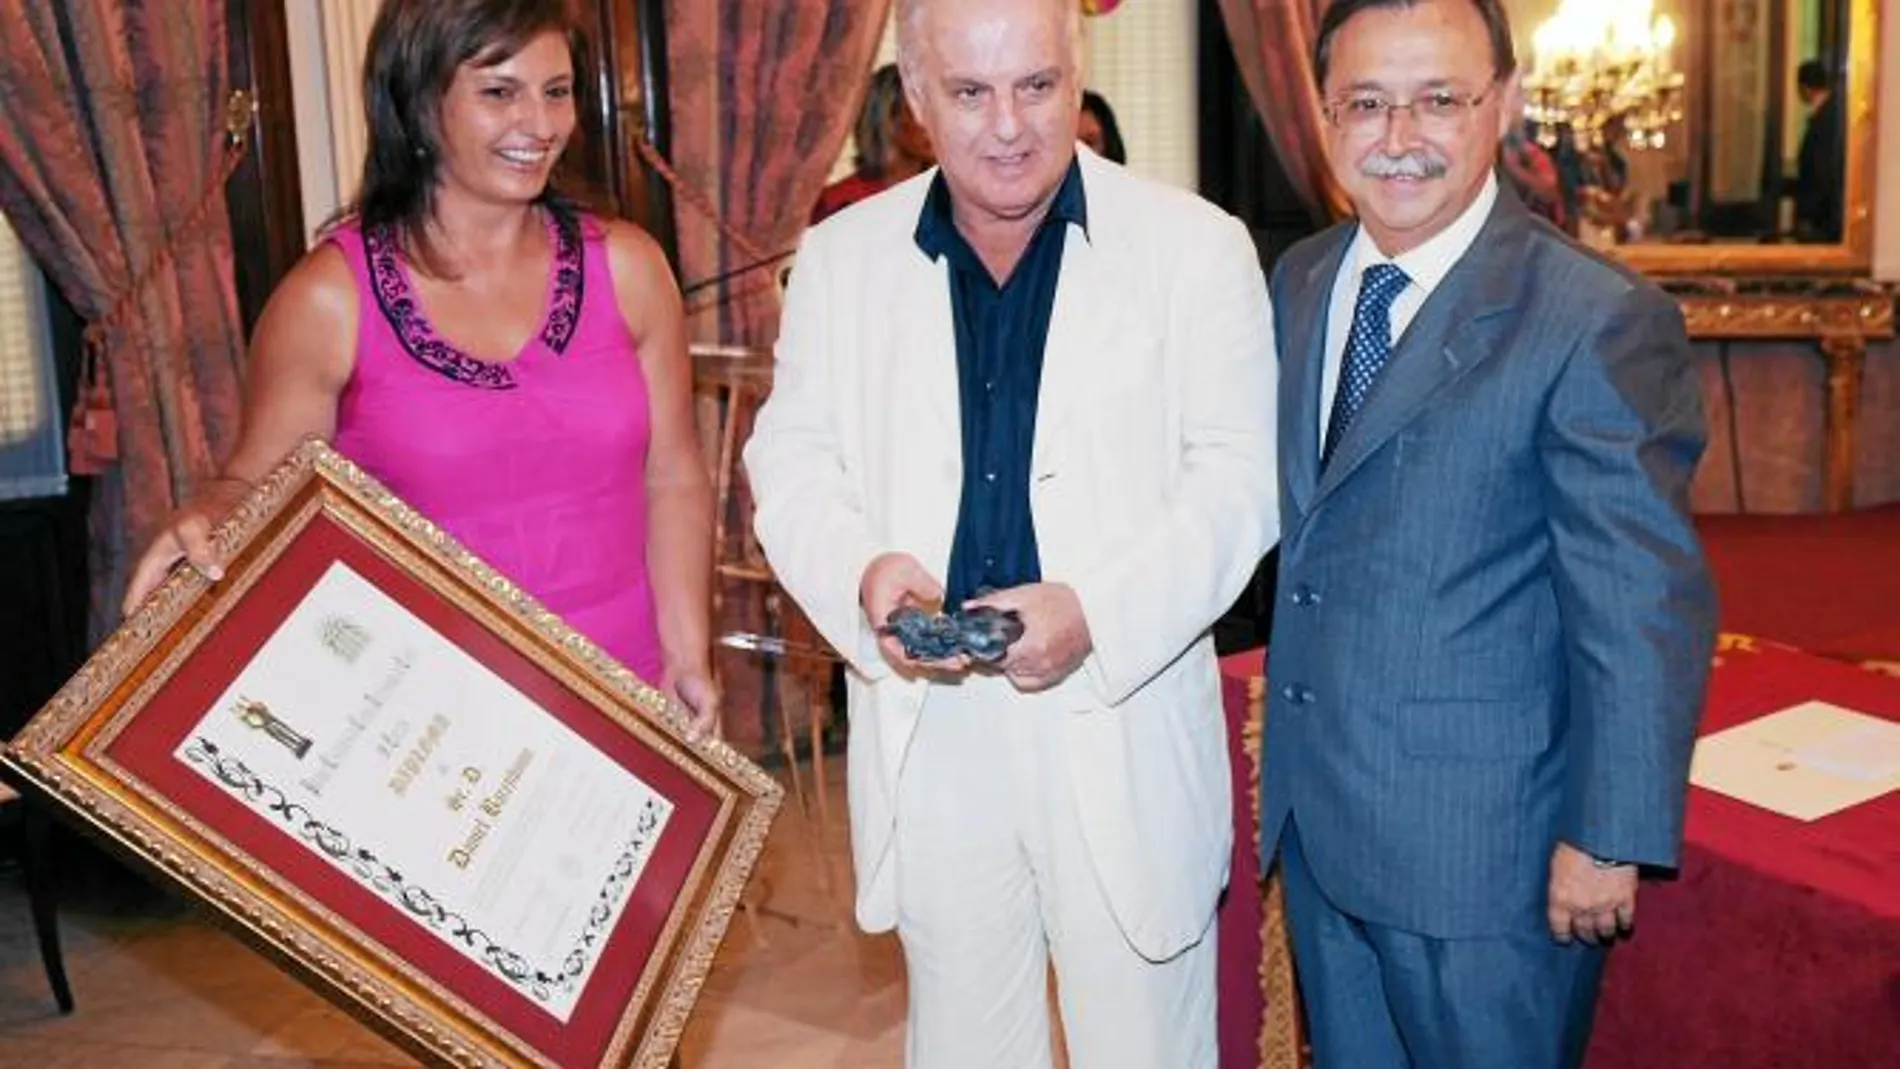 El director de orquesta Daniel Baremboim, en la imagen junto al presidente ceutí Juan Jesús Vivas, recibió el premio en 2007